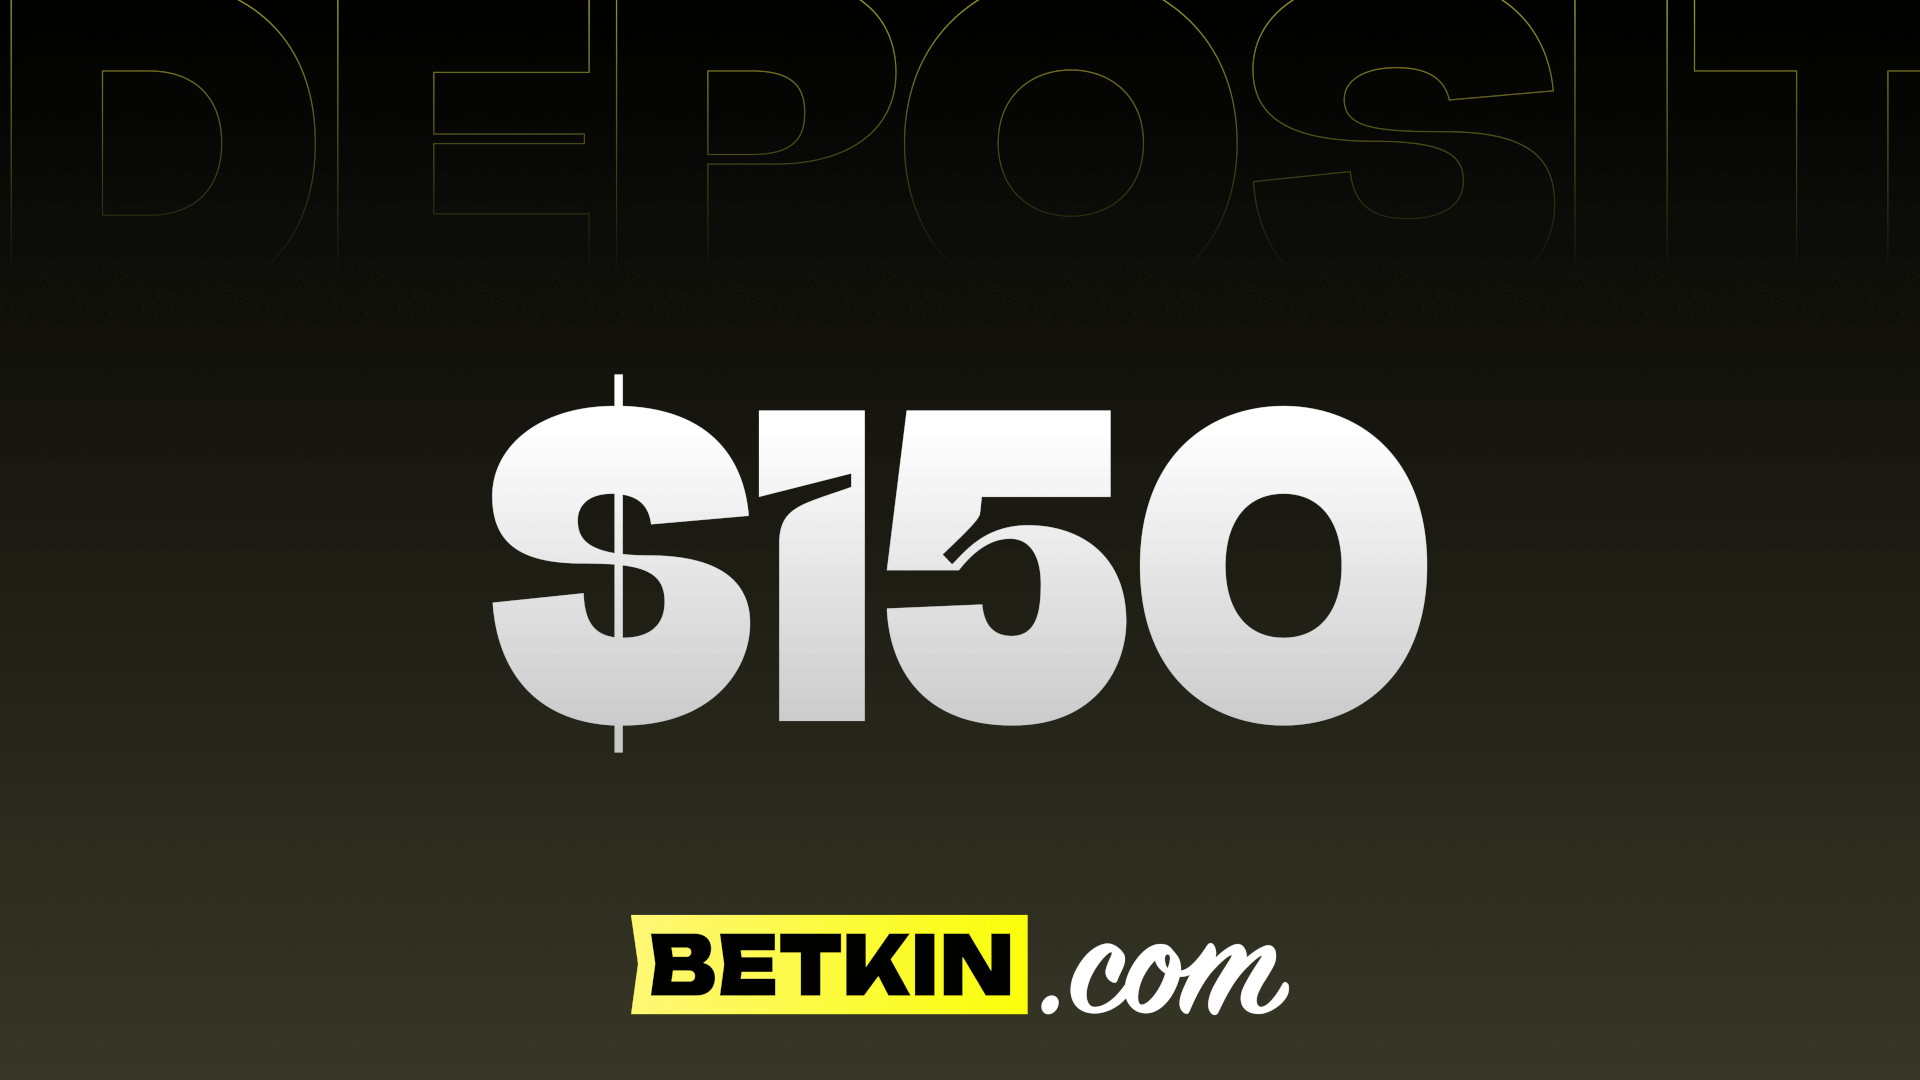 Betkin $150 Coupon 166.96 usd